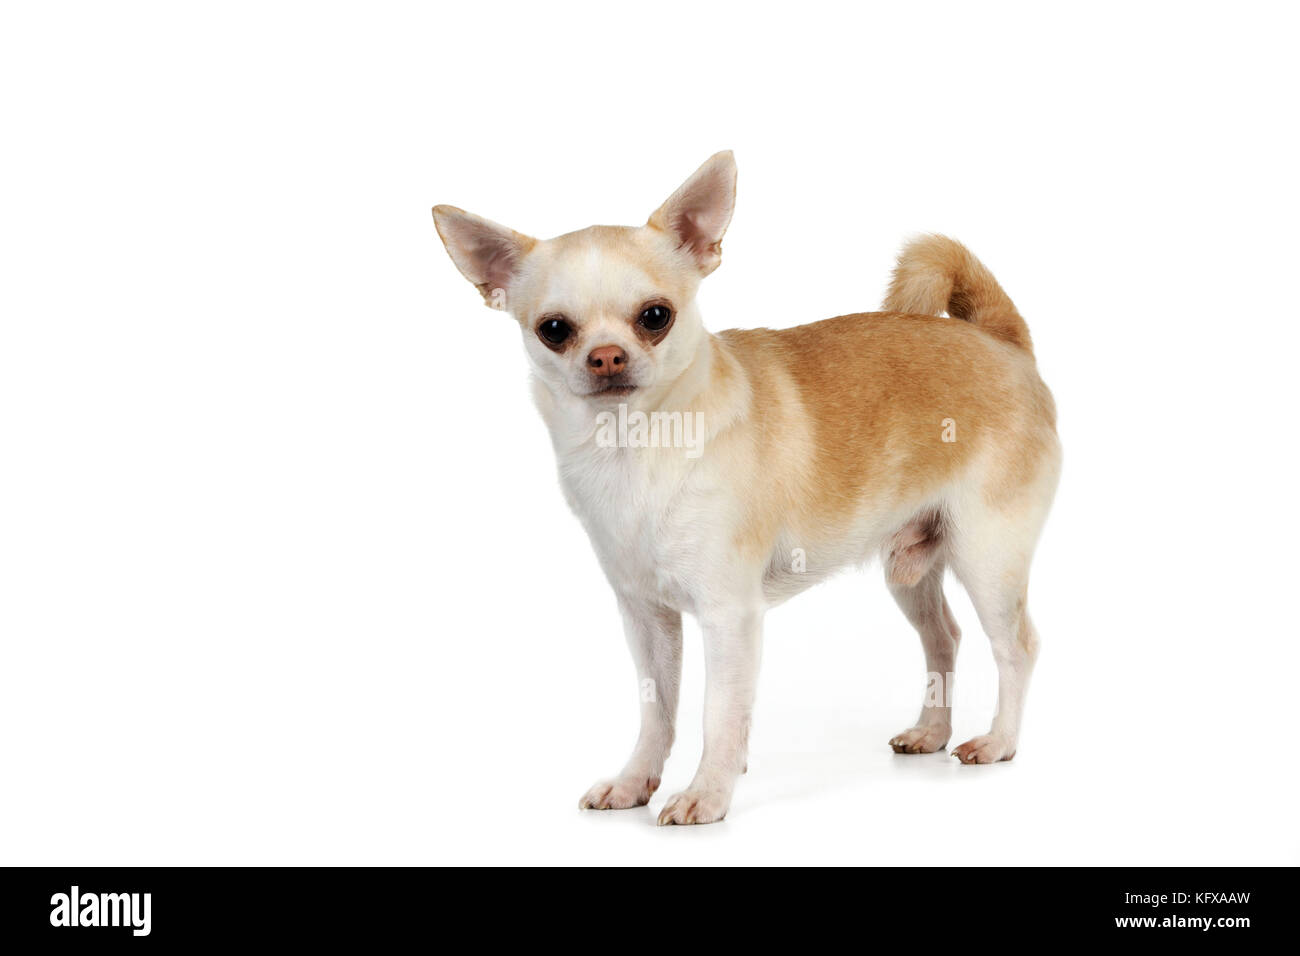 blanco corto pelo chihuahua perros sentado en de madera perro casa,  sonriente y mirando a cámara. 26327434 Foto de stock en Vecteezy